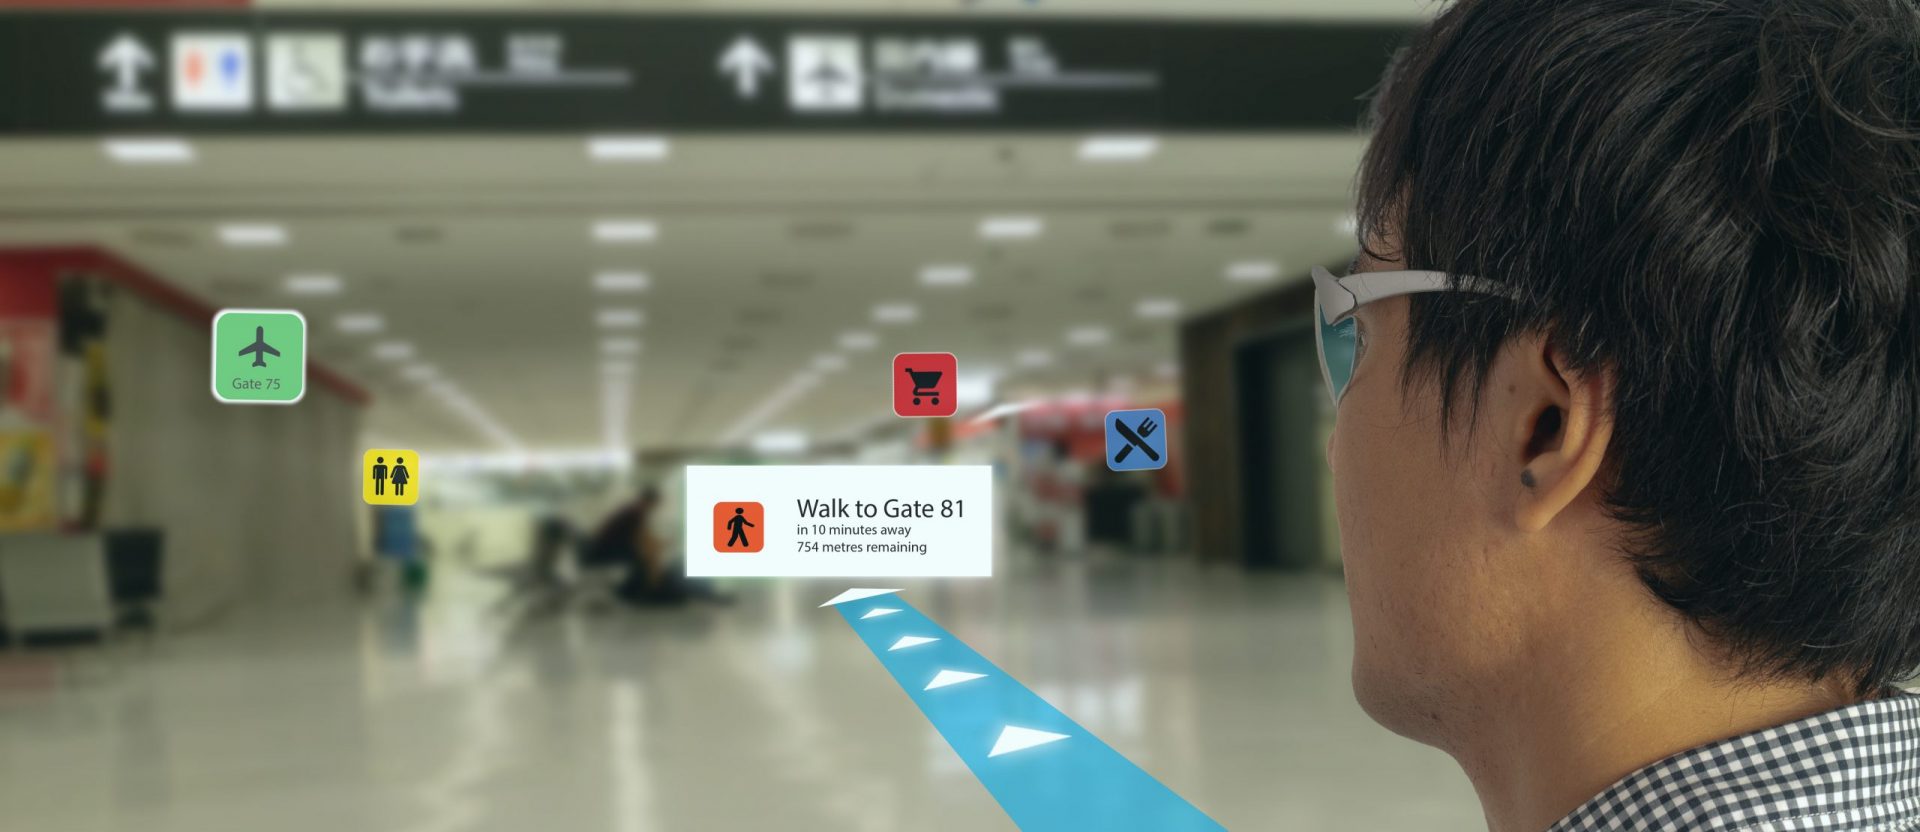 Intelligente Technologie in der Industrie, Mobile 4.0 oder 5.0 Konzept. Benutzer verwenden intelligente Brillen mit Augmented Mixed Virtual Reality-Technologie in echtem 3D, um Karten, Geschäfte und den Weg zum Gate am Flughafen anzuzeigen.